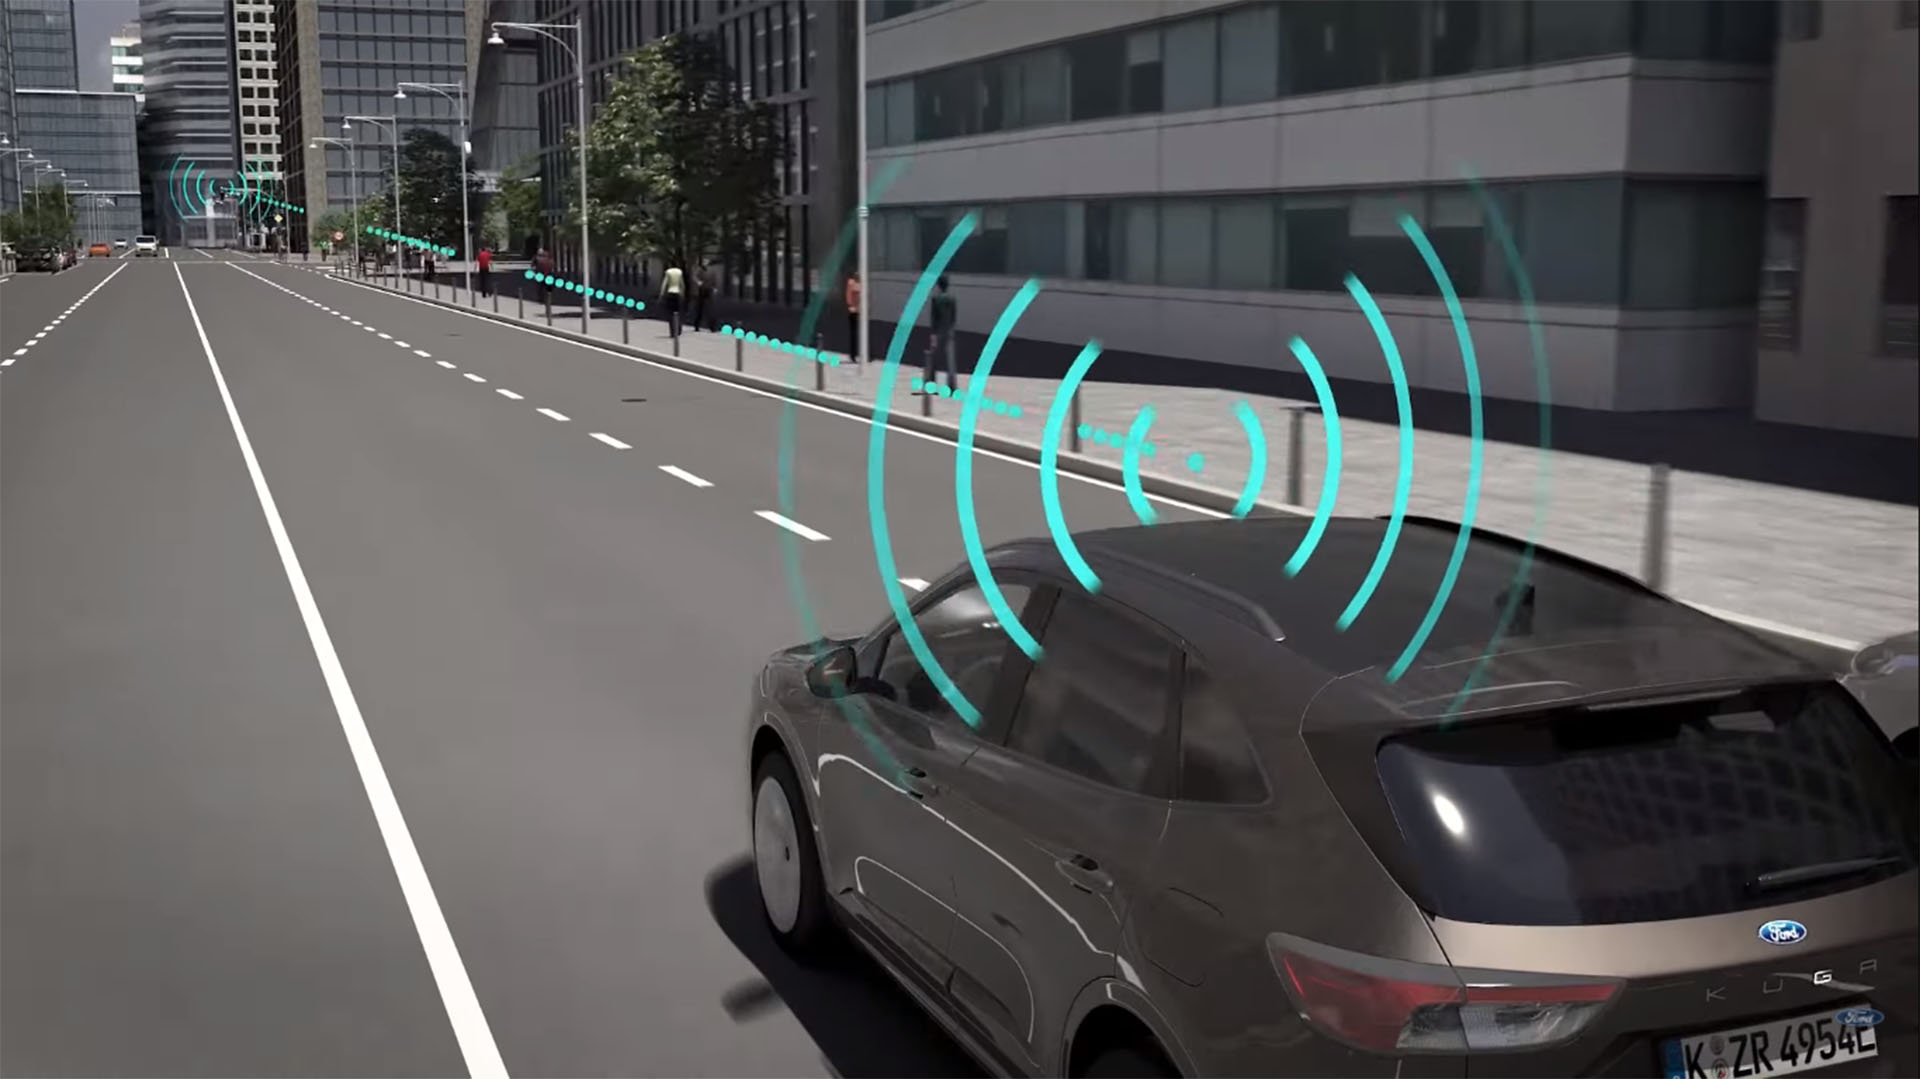 Un ecosistema de conexión con tecnología 5G parece posible, pero los autos no podrán prescindir del conductor humano para zonas donde la conectividad no esté asegurada